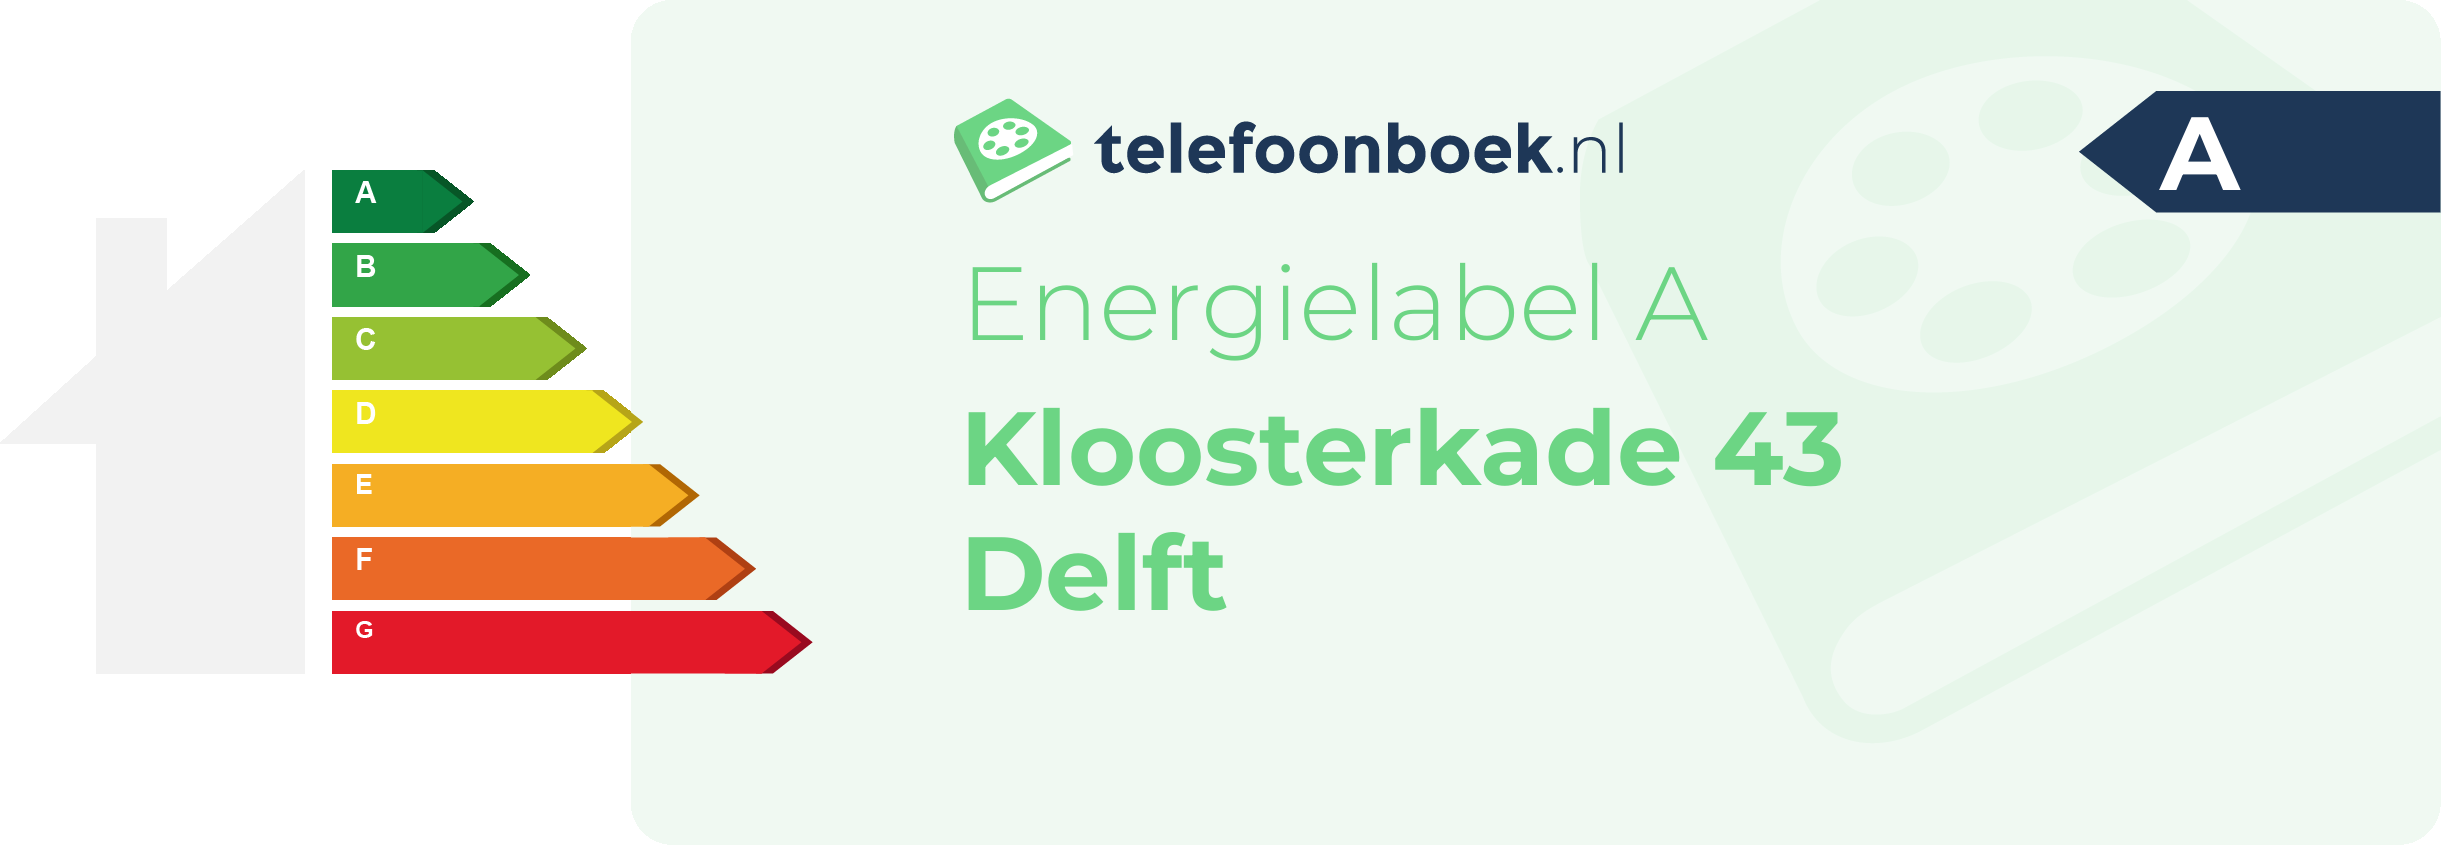 Energielabel Kloosterkade 43 Delft